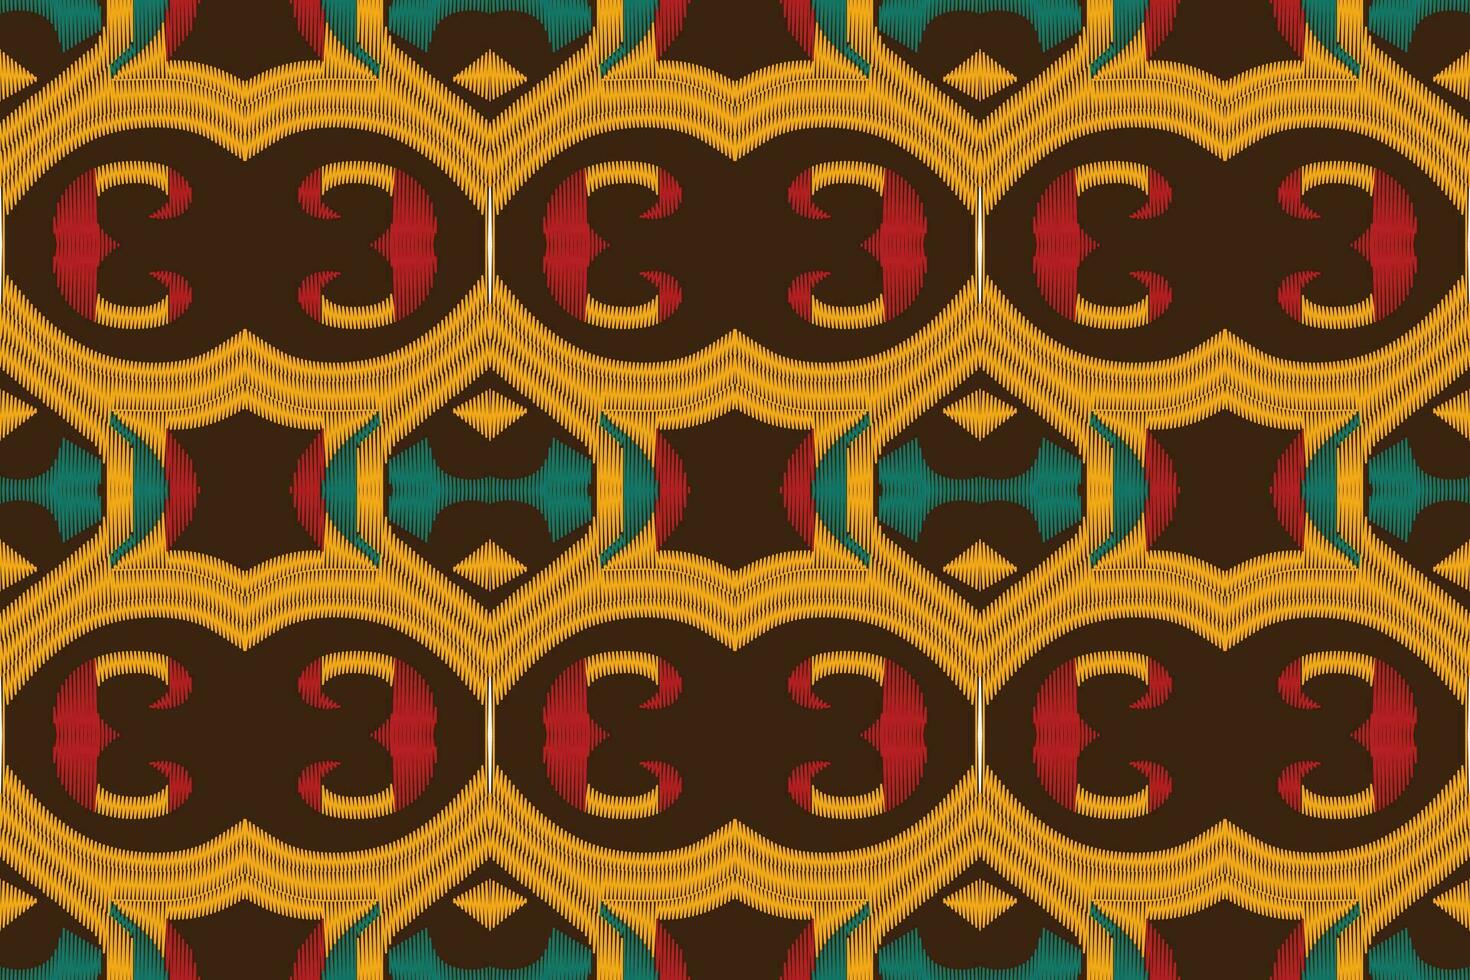 ikat blommig paisley broderi bakgrund. ikat triangel geometrisk etnisk orientalisk mönster traditionell.aztec stil abstrakt vektor illustration.design för textur, tyg, kläder, inslagning, sarong.